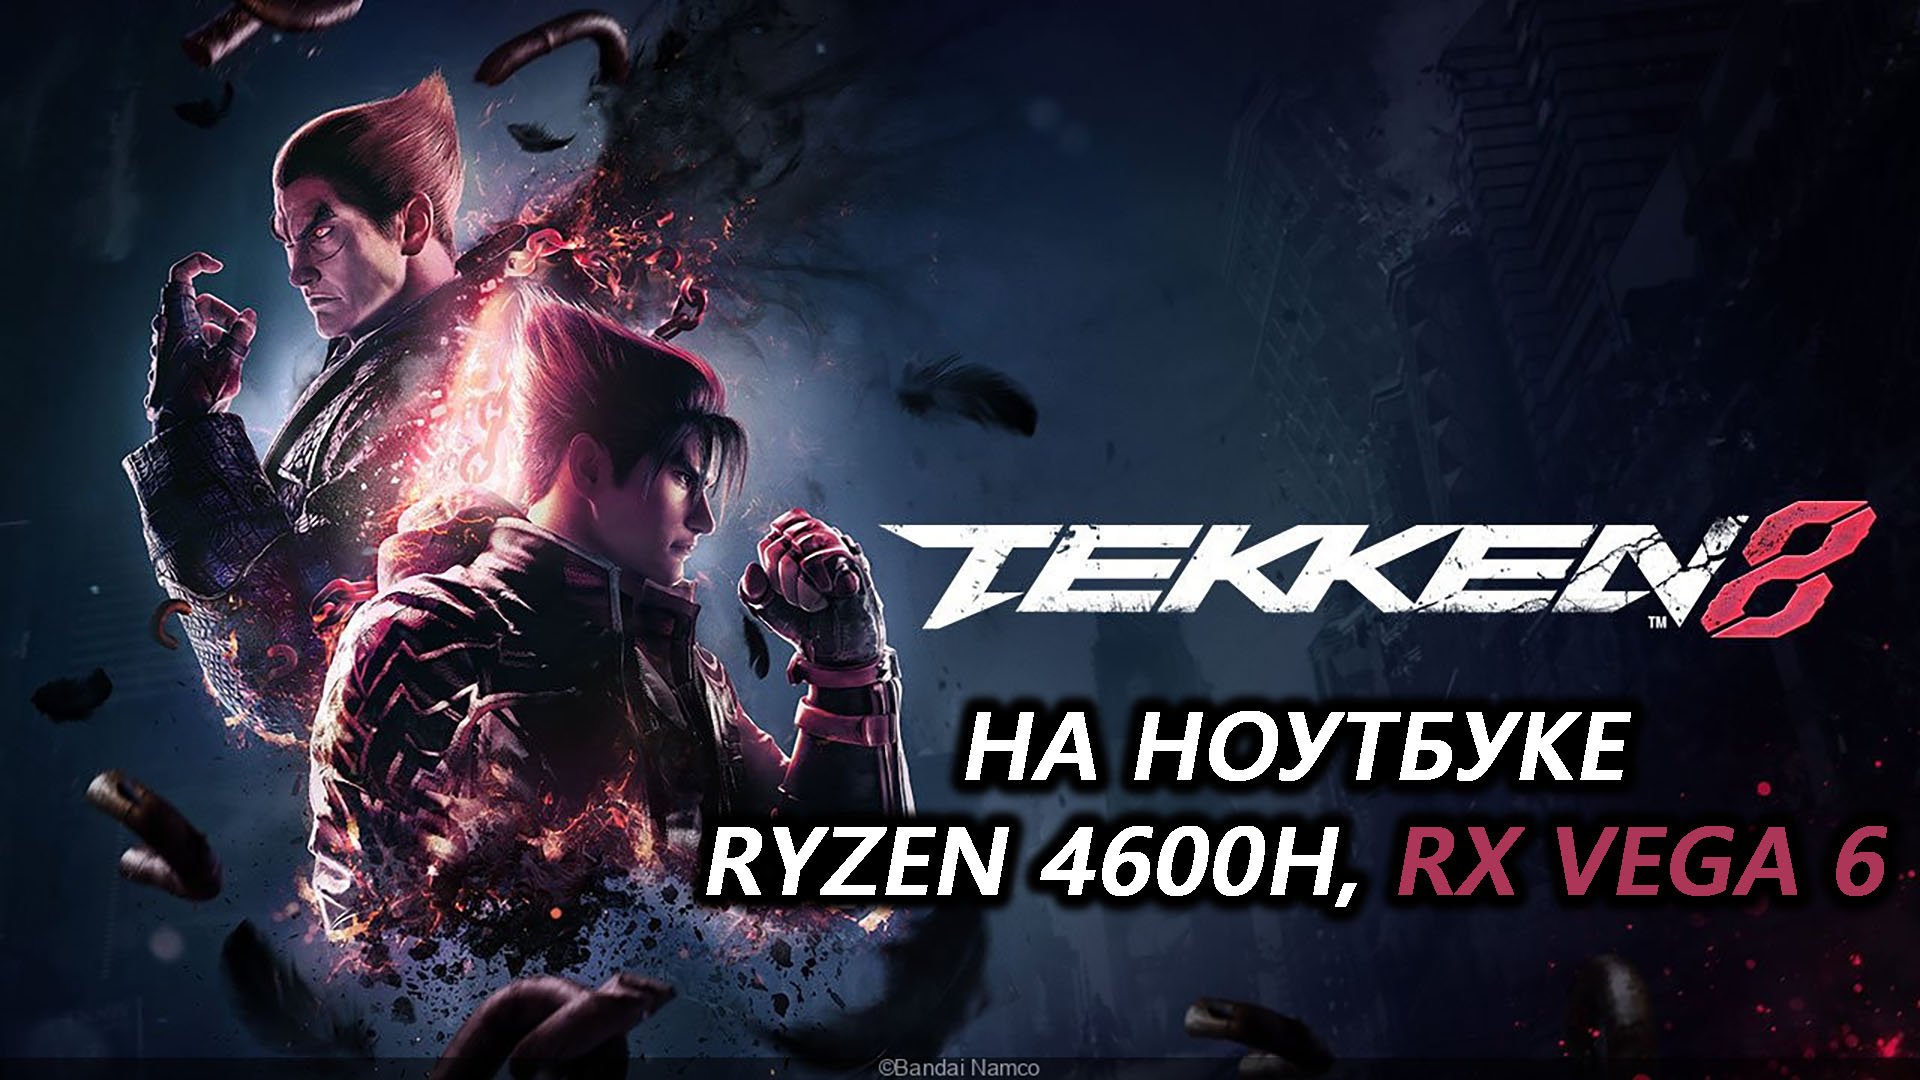 Tekken 8 на ноутбуке (RX Vega 6)